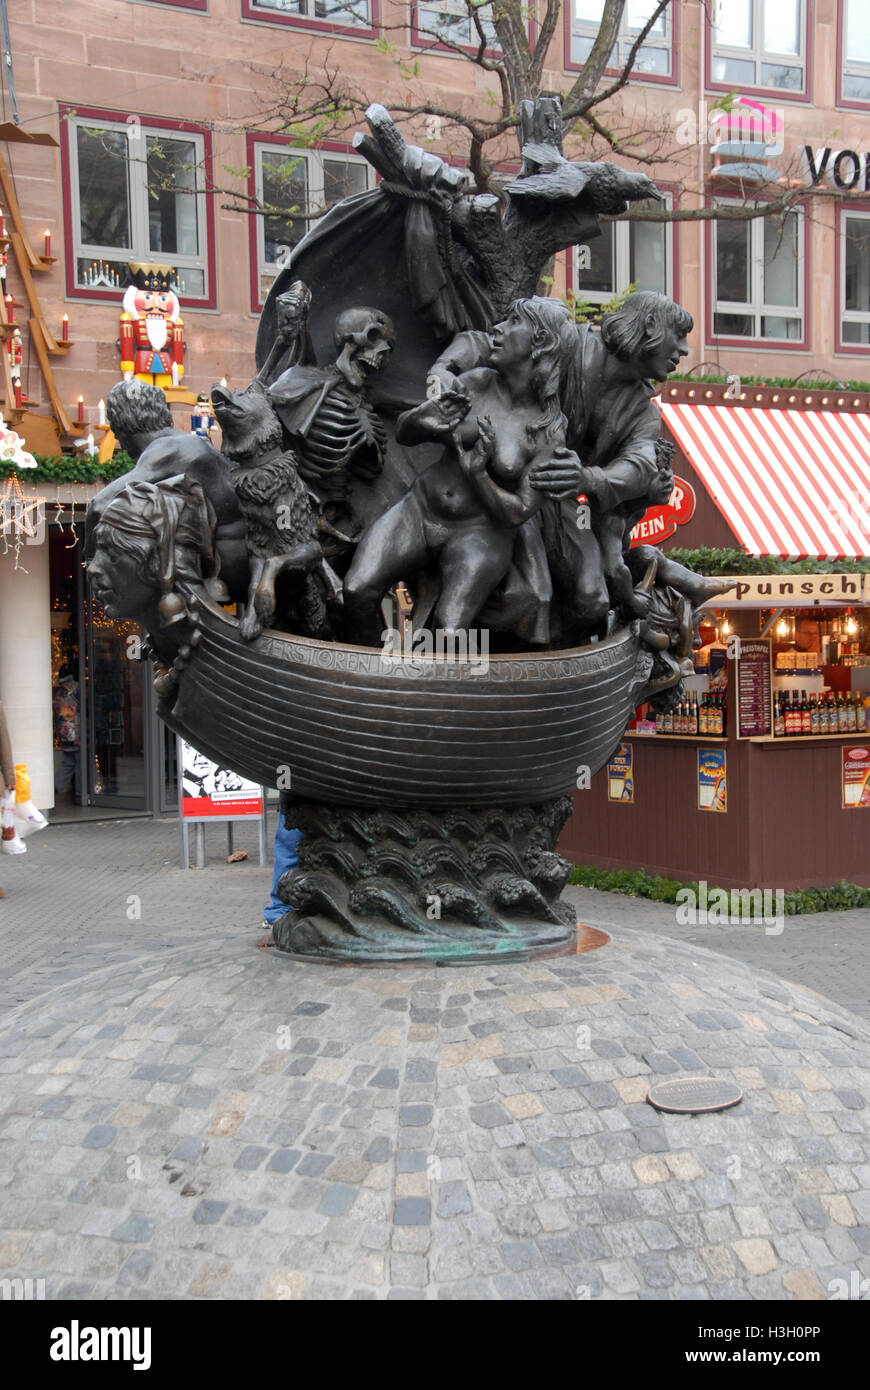 Ein Denkmal für das Schiff des verrückten Mannes oder das „Schiff der Narren“ in Plobenhofstraße, einer der Haupteinkaufsstraßen in Nürnberg, Deutschland Stockfoto